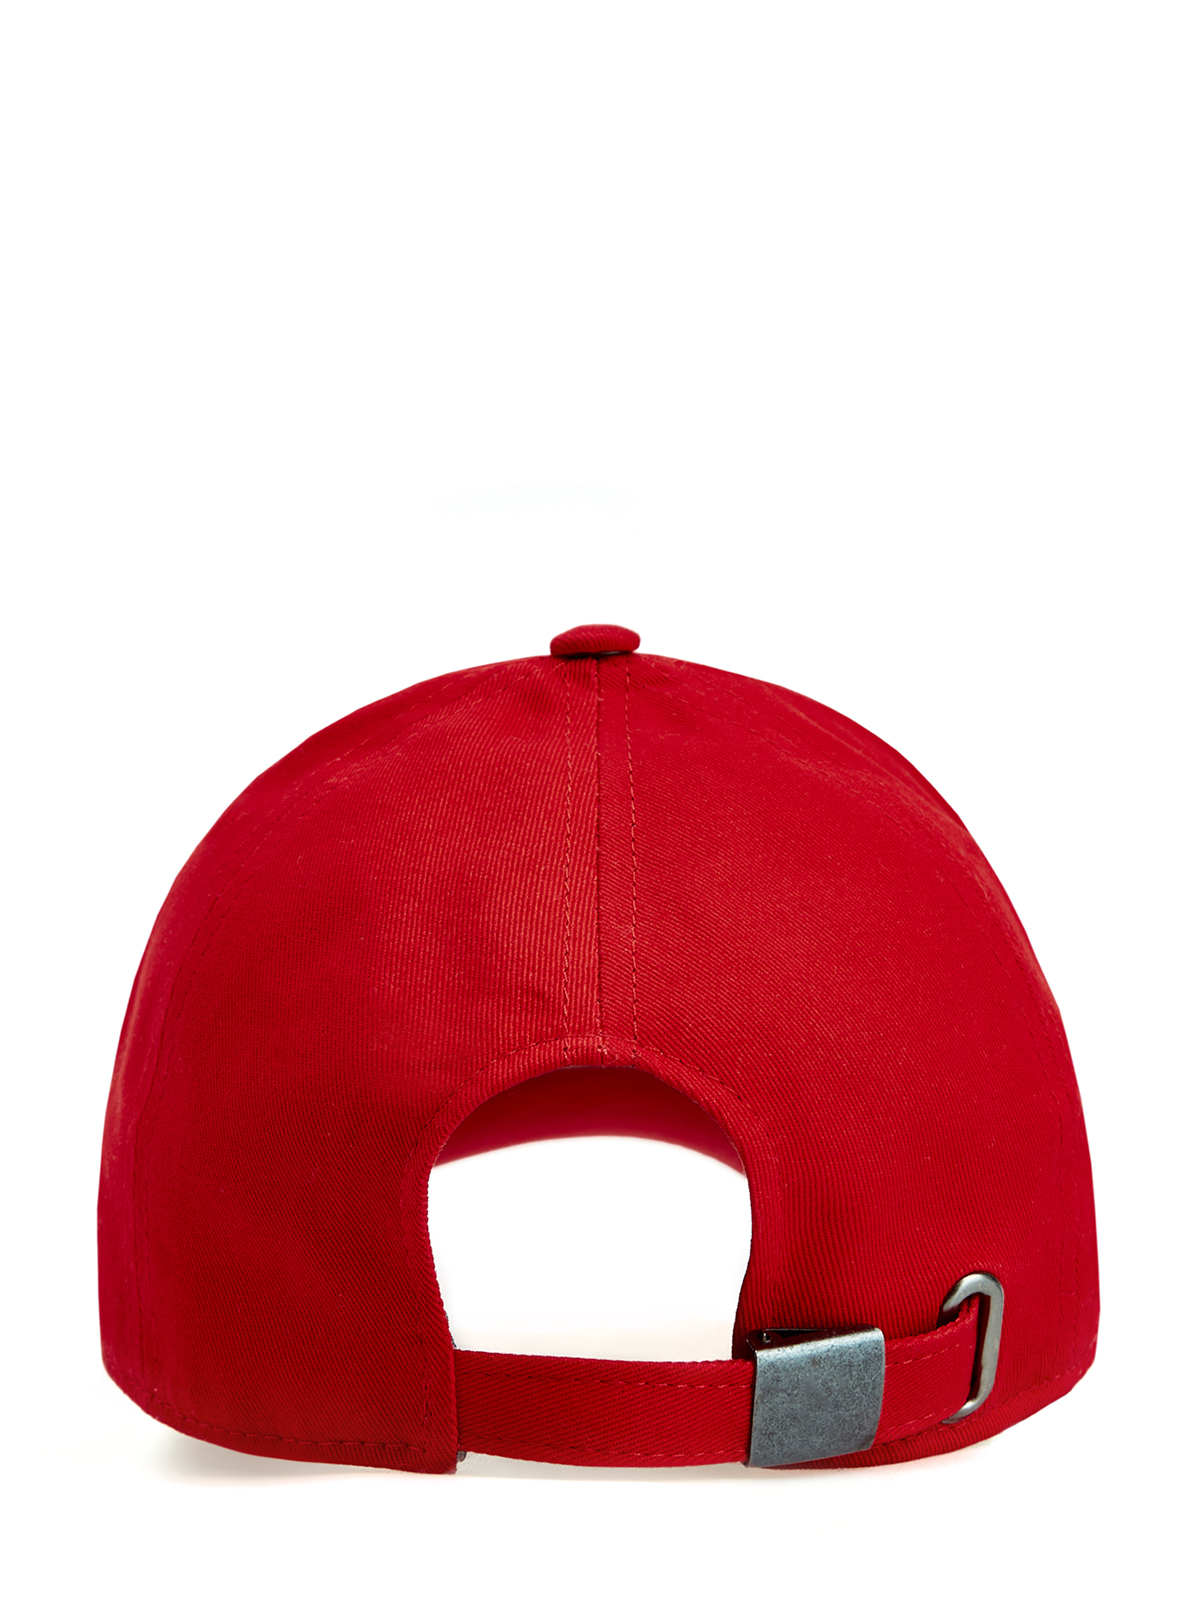 Бейсболка из хлопкового габардина с объемным вышитым логотипом CUDGI, цвет красный, размер 58;59 - фото 3